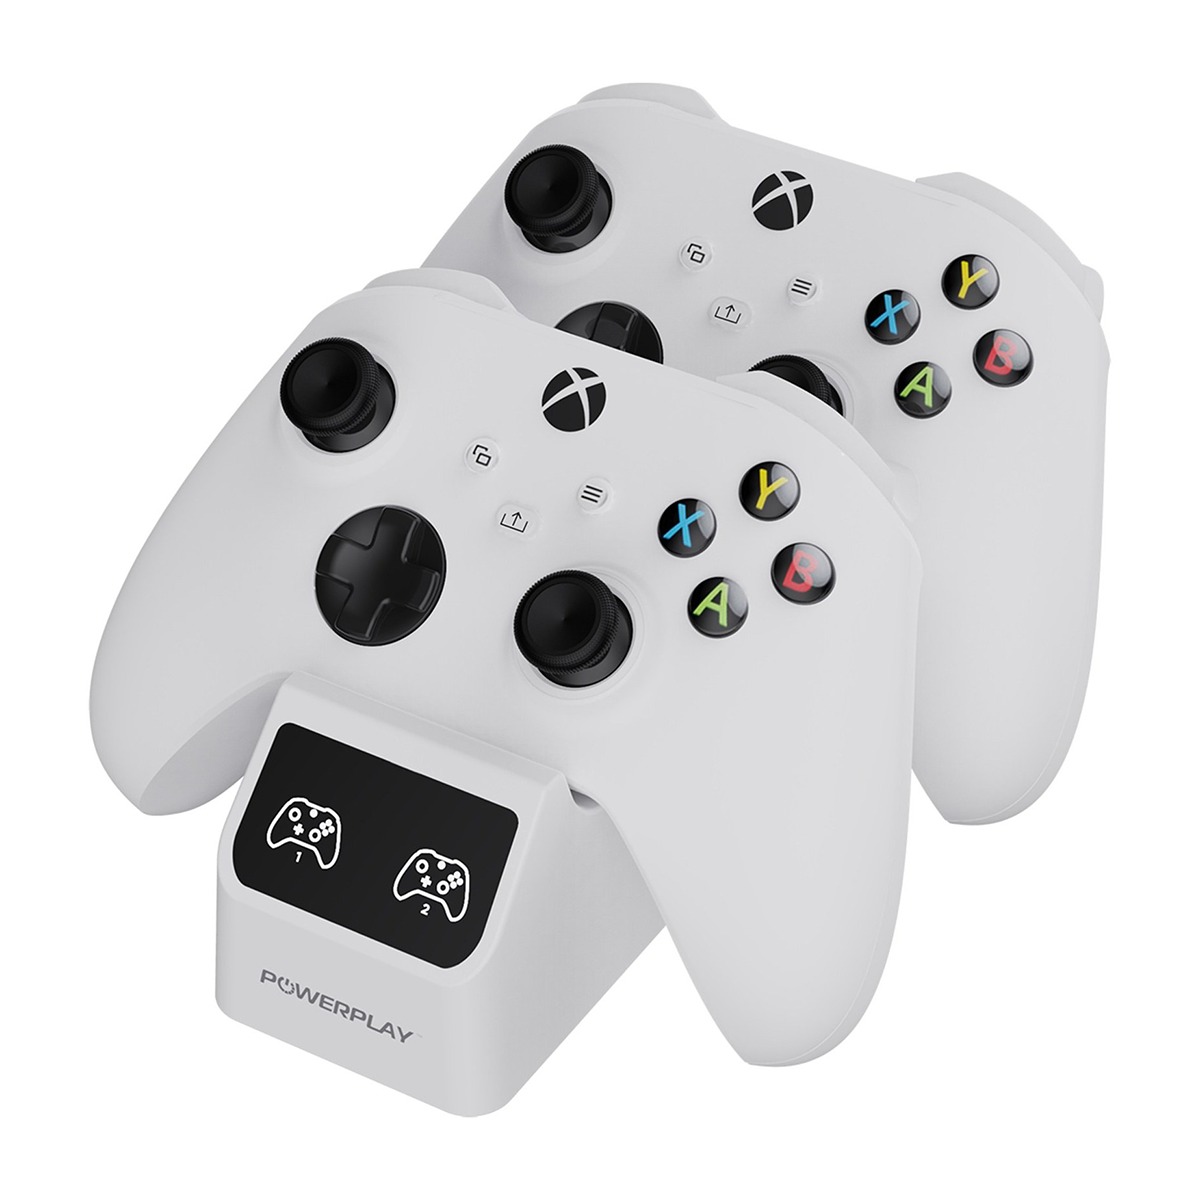  پایه شارژر اسپارک فاکس مناسب دسته Xbox Series X/S مدل W20X513-01-سفید